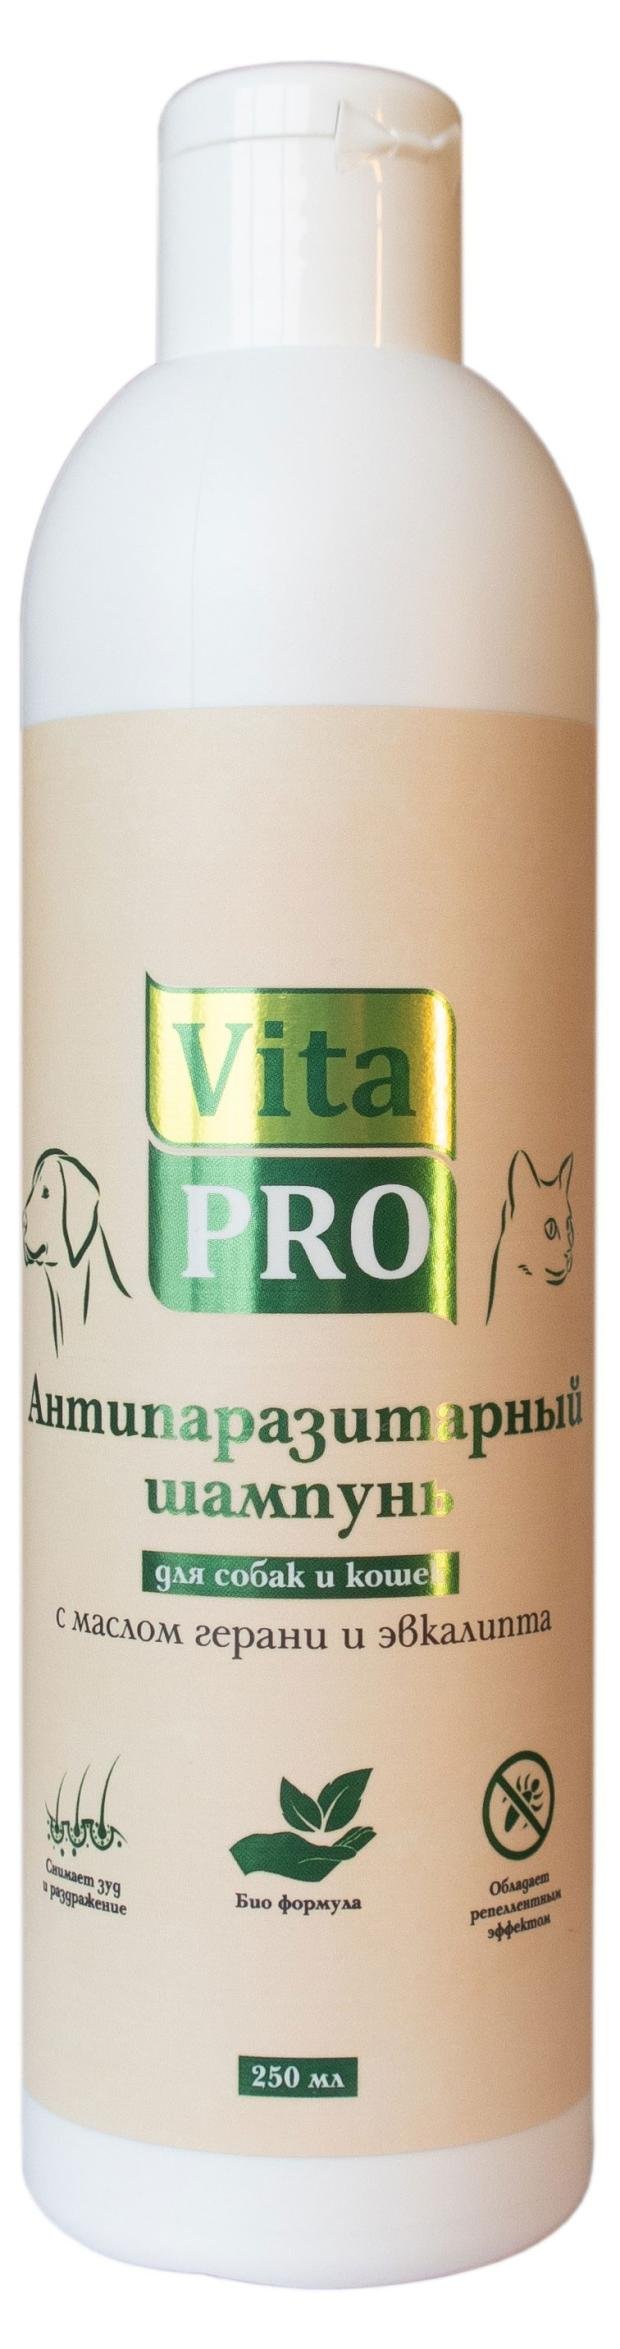 Биошампунь для собак и кошек Vita Pro Антипаразитарный универсальный с маслом герани и эвкалипта, 250 мл